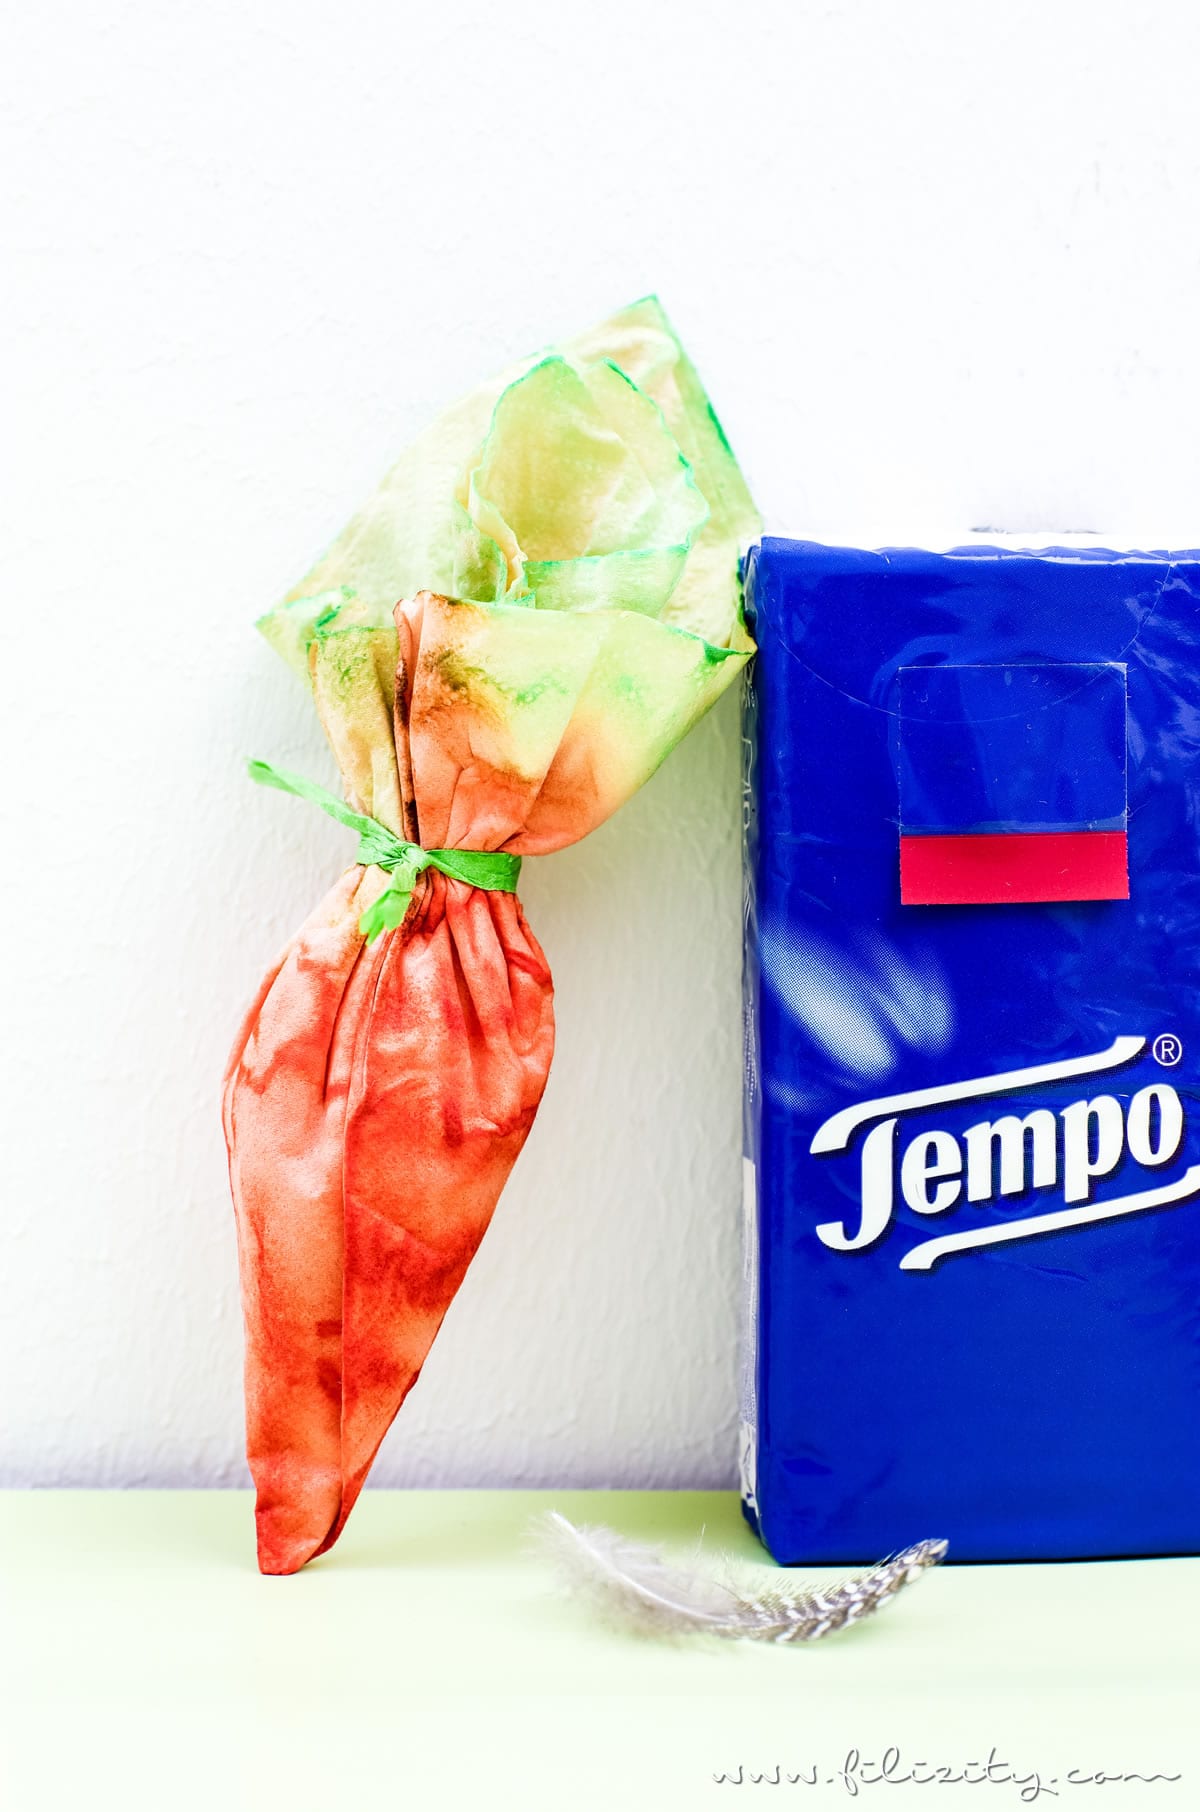 Ostergeschenke verpacken mit DIY Möhrchen-Geschenkverpackung aus Tempo Taschentüchern | Kreative Geschenkverpackung selber machen | Filizity.com | DIY-Blog aus dem Rheinland #tempoworld #tempo #ostern